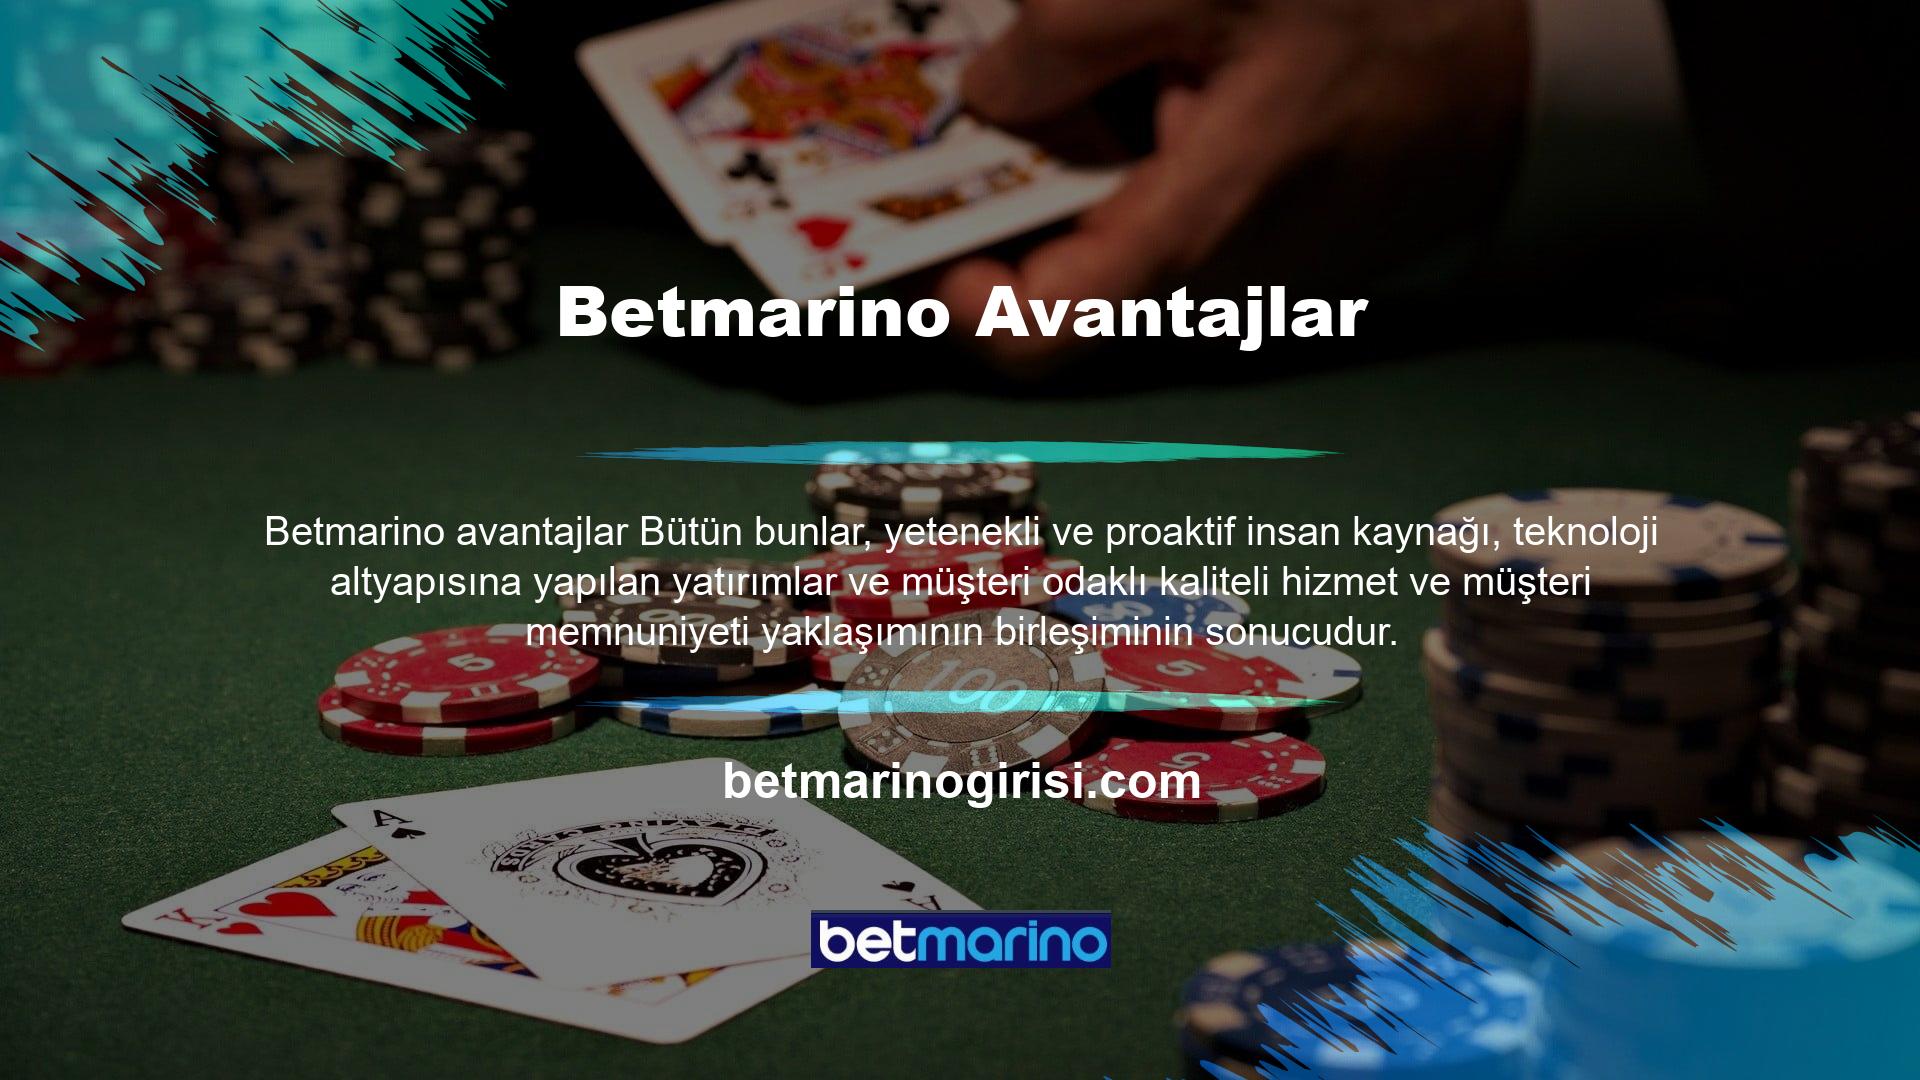 Kayıt işlemini tamamladığınız anda Betmarino avantajları başlayacaktır